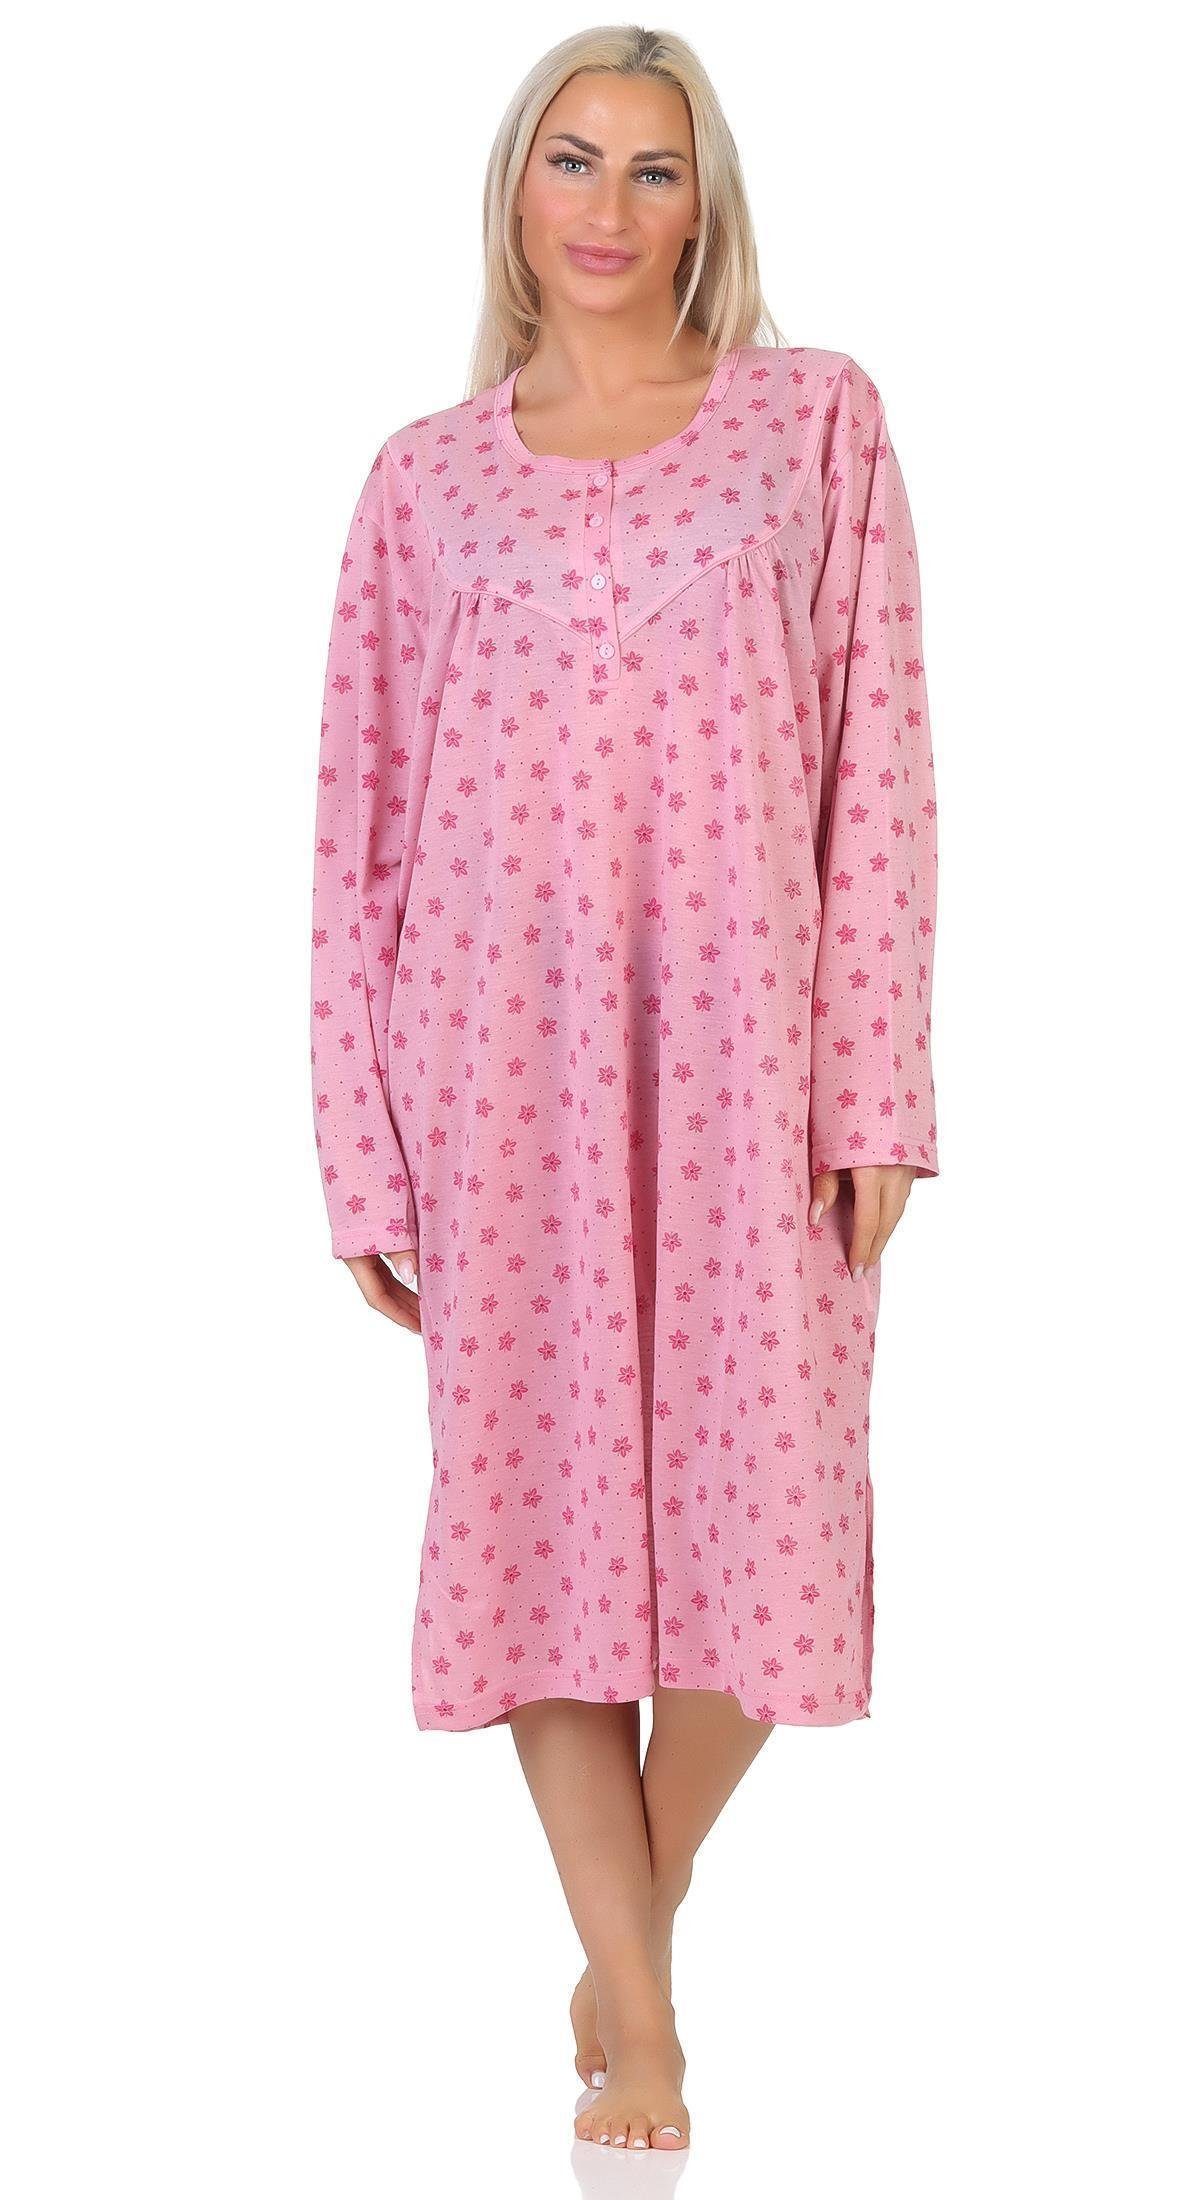 Rosa Nachthemden für Damen kaufen » Pinke Nachthemden | OTTO | Nachthemden